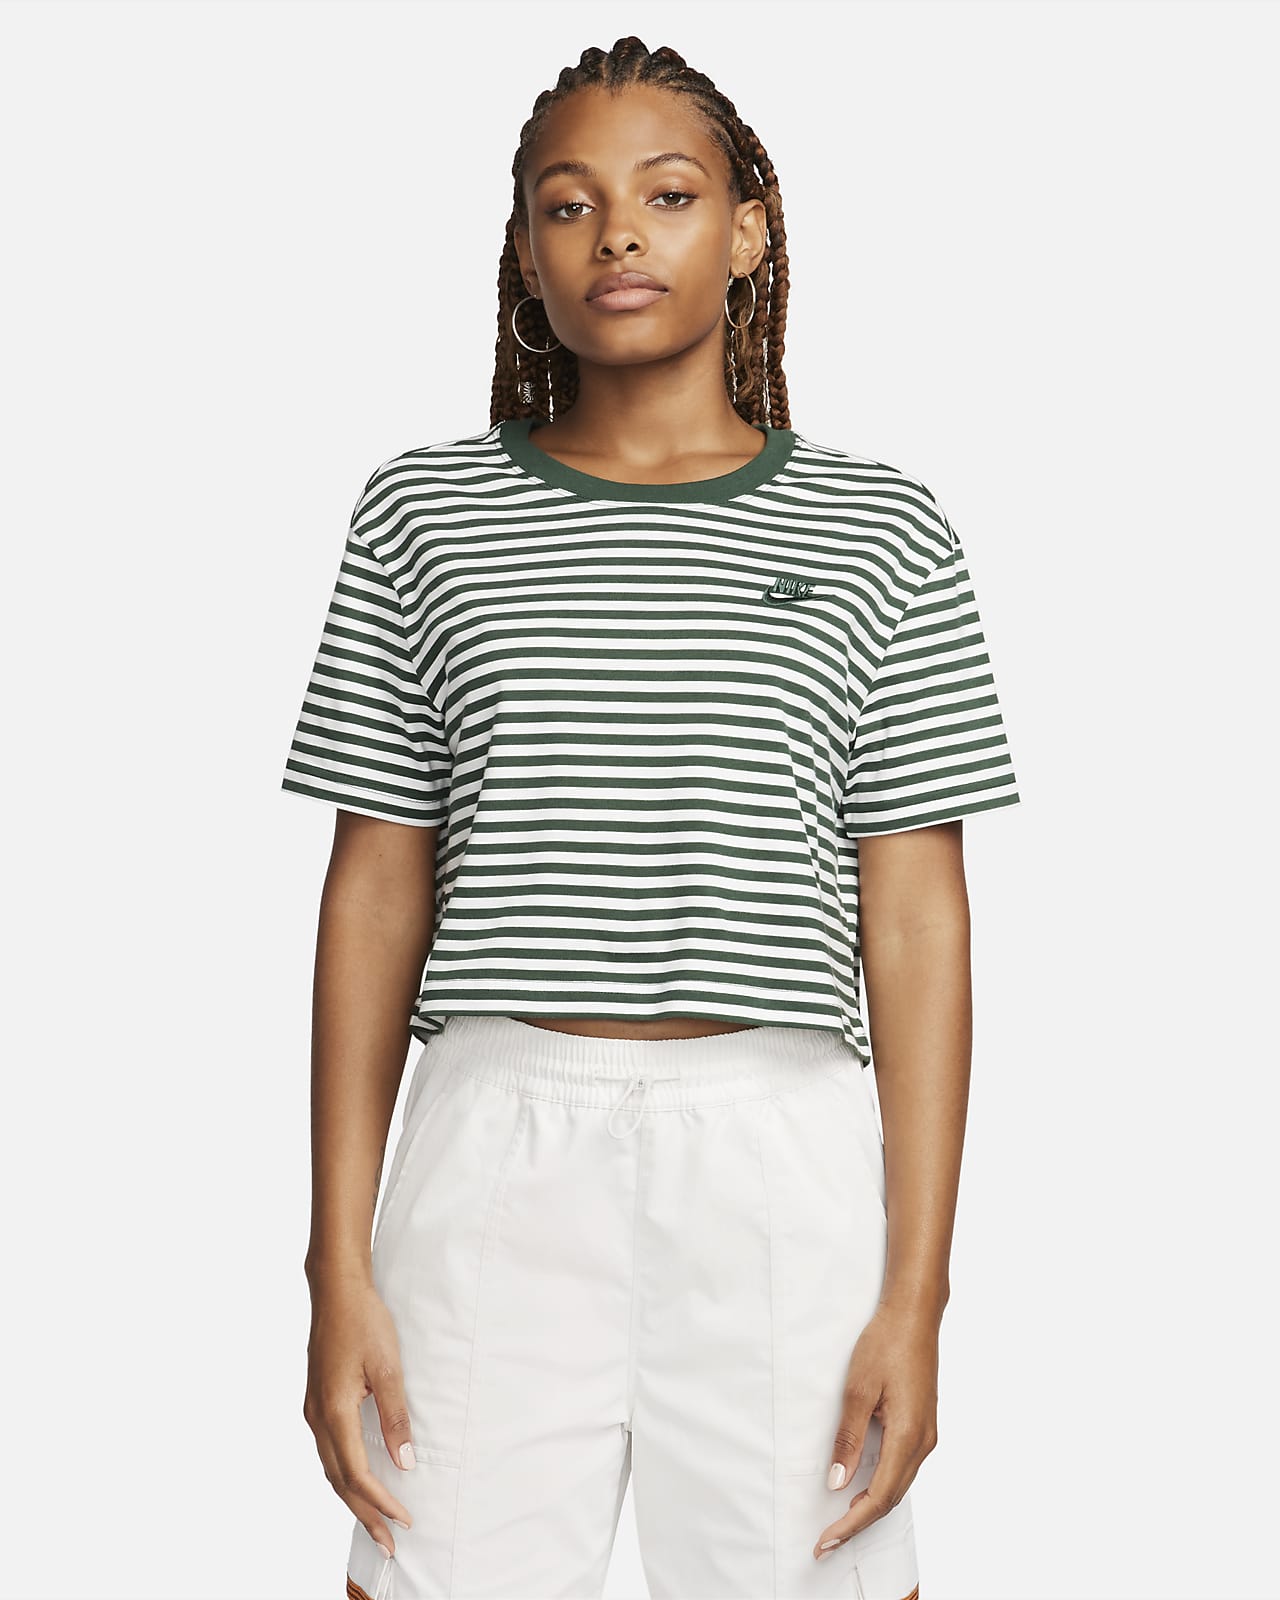 Crop Striped Women\'s Nike T-Shirt. Sportswear Essential